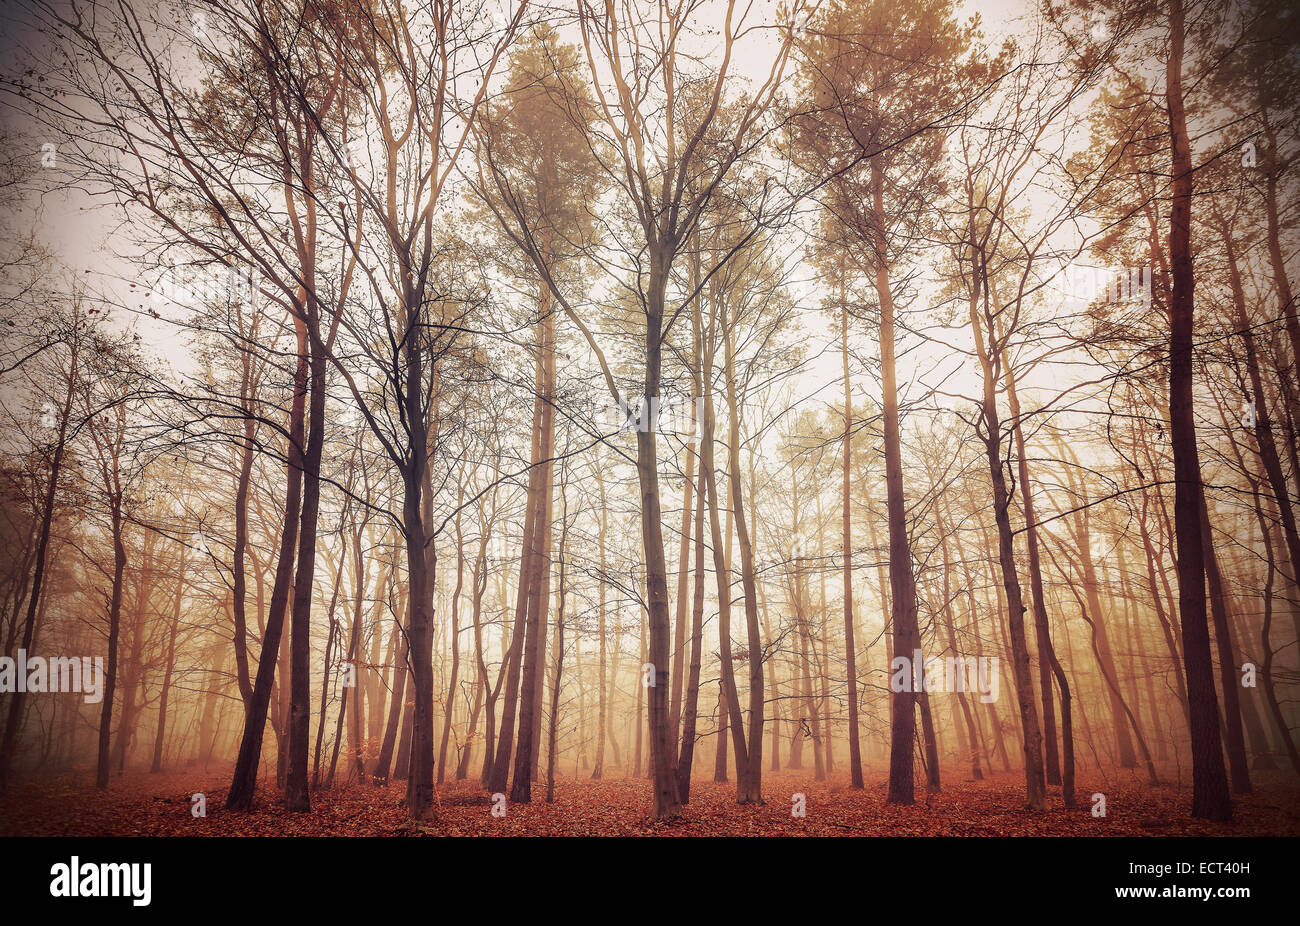 Retrò immagine filtrata di un Bosco nebbioso. Foto Stock